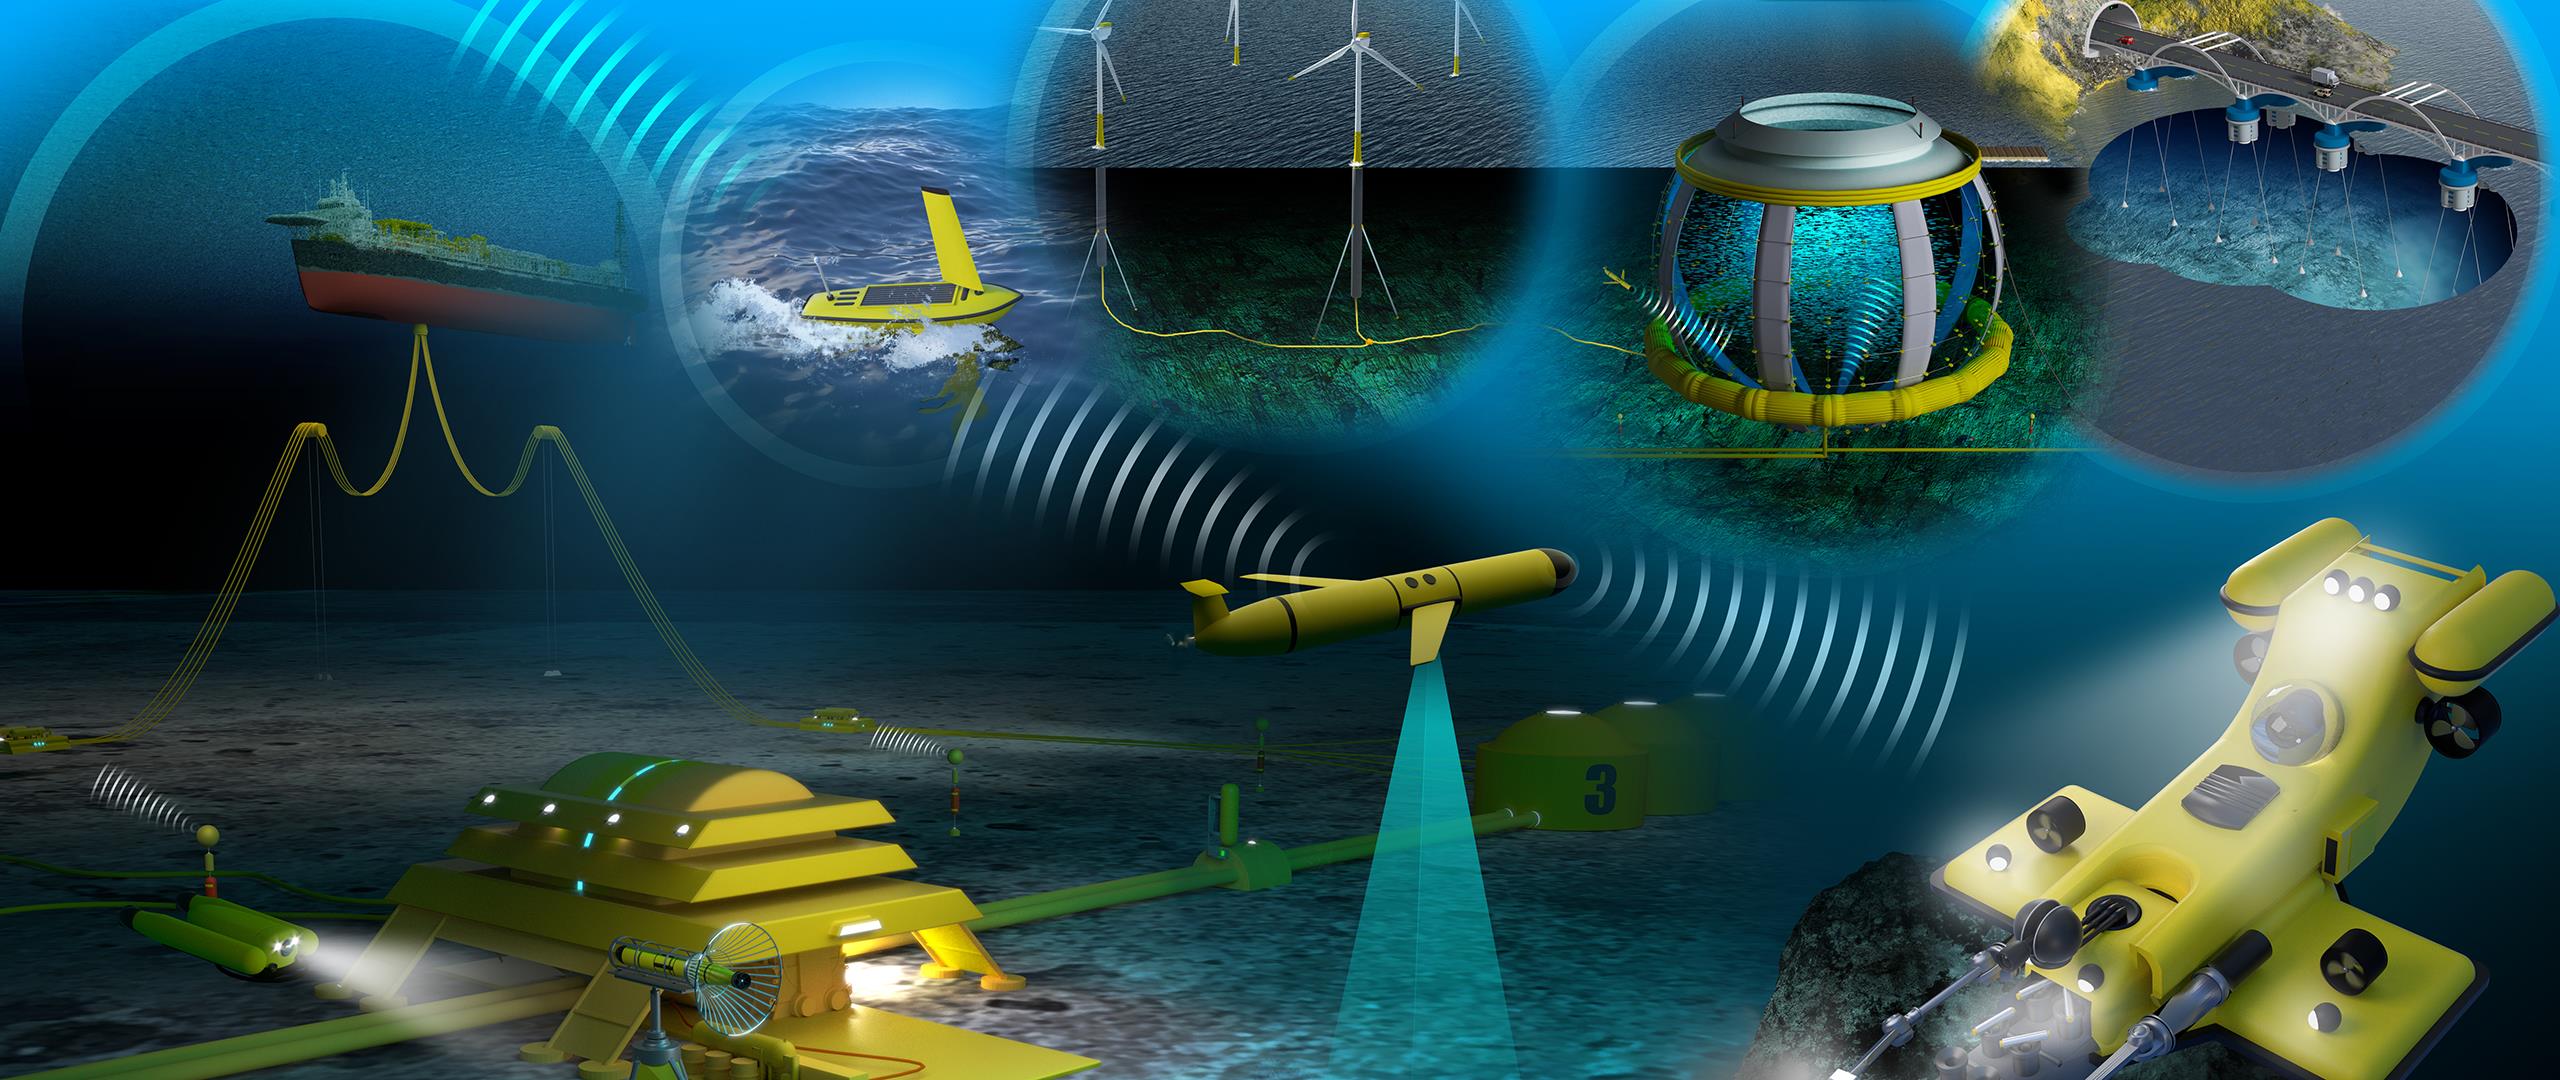 Illustrasjon av undervannsteknologi.